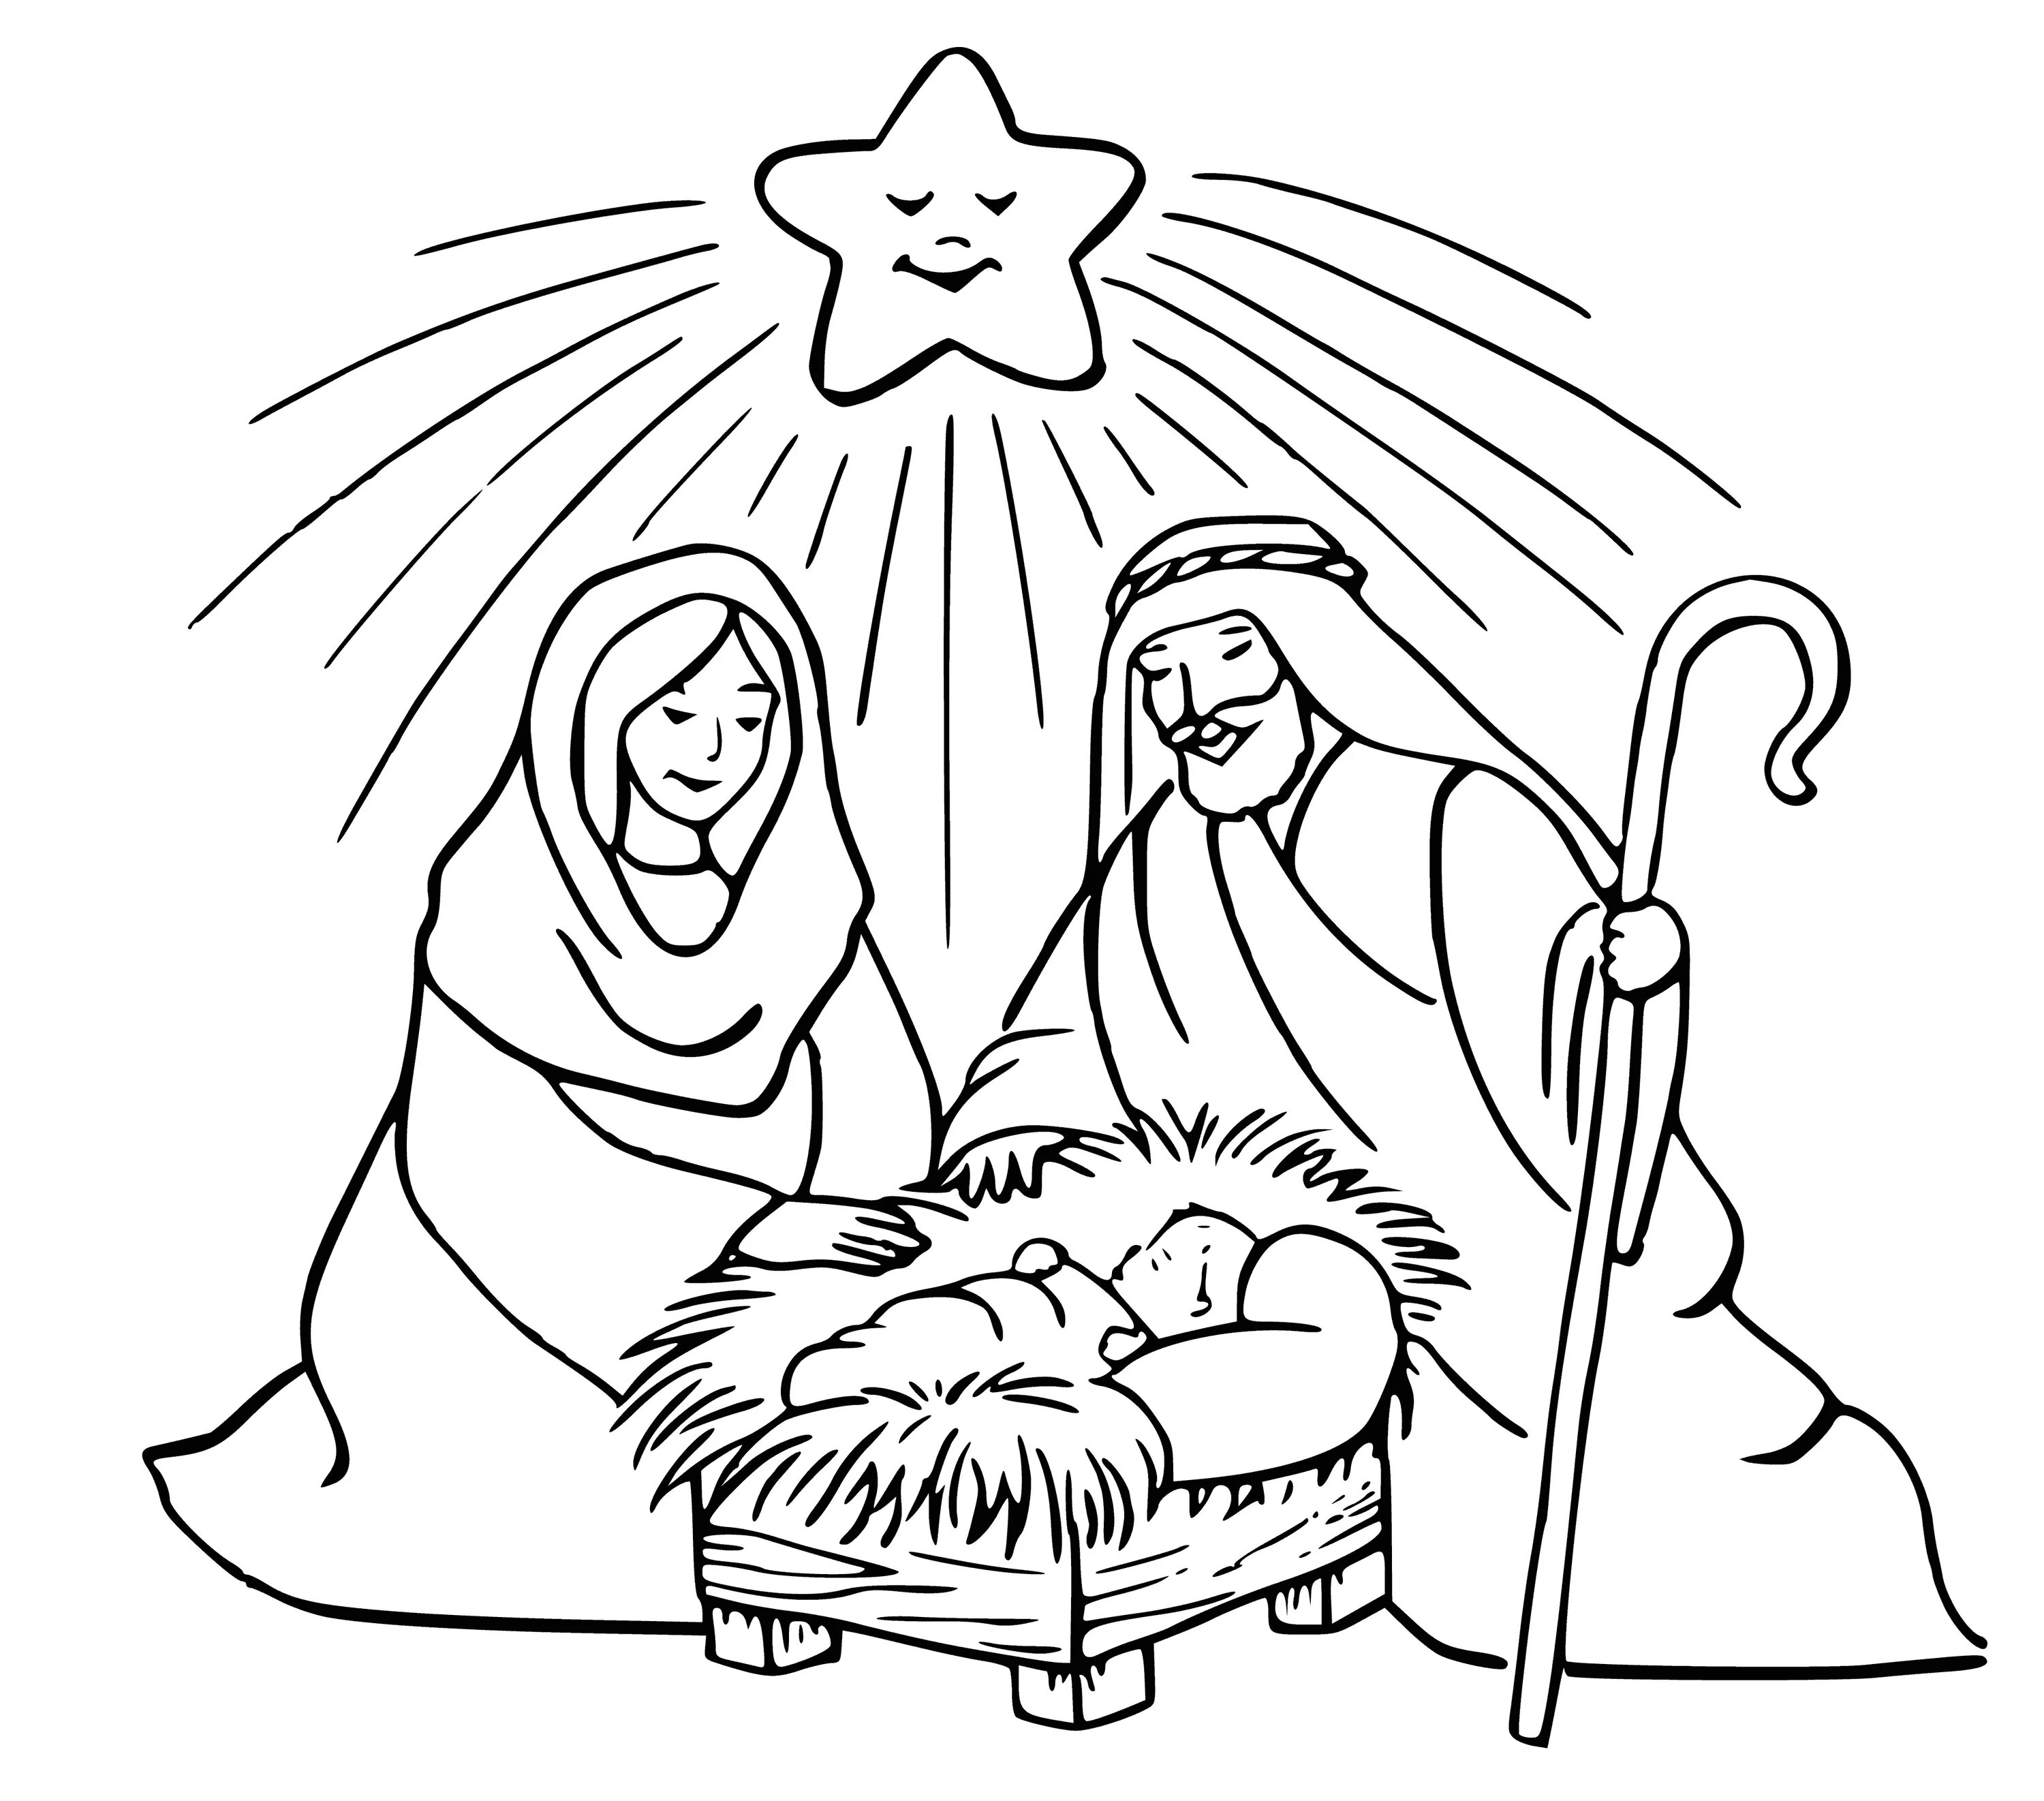 Jesus in the manger #2